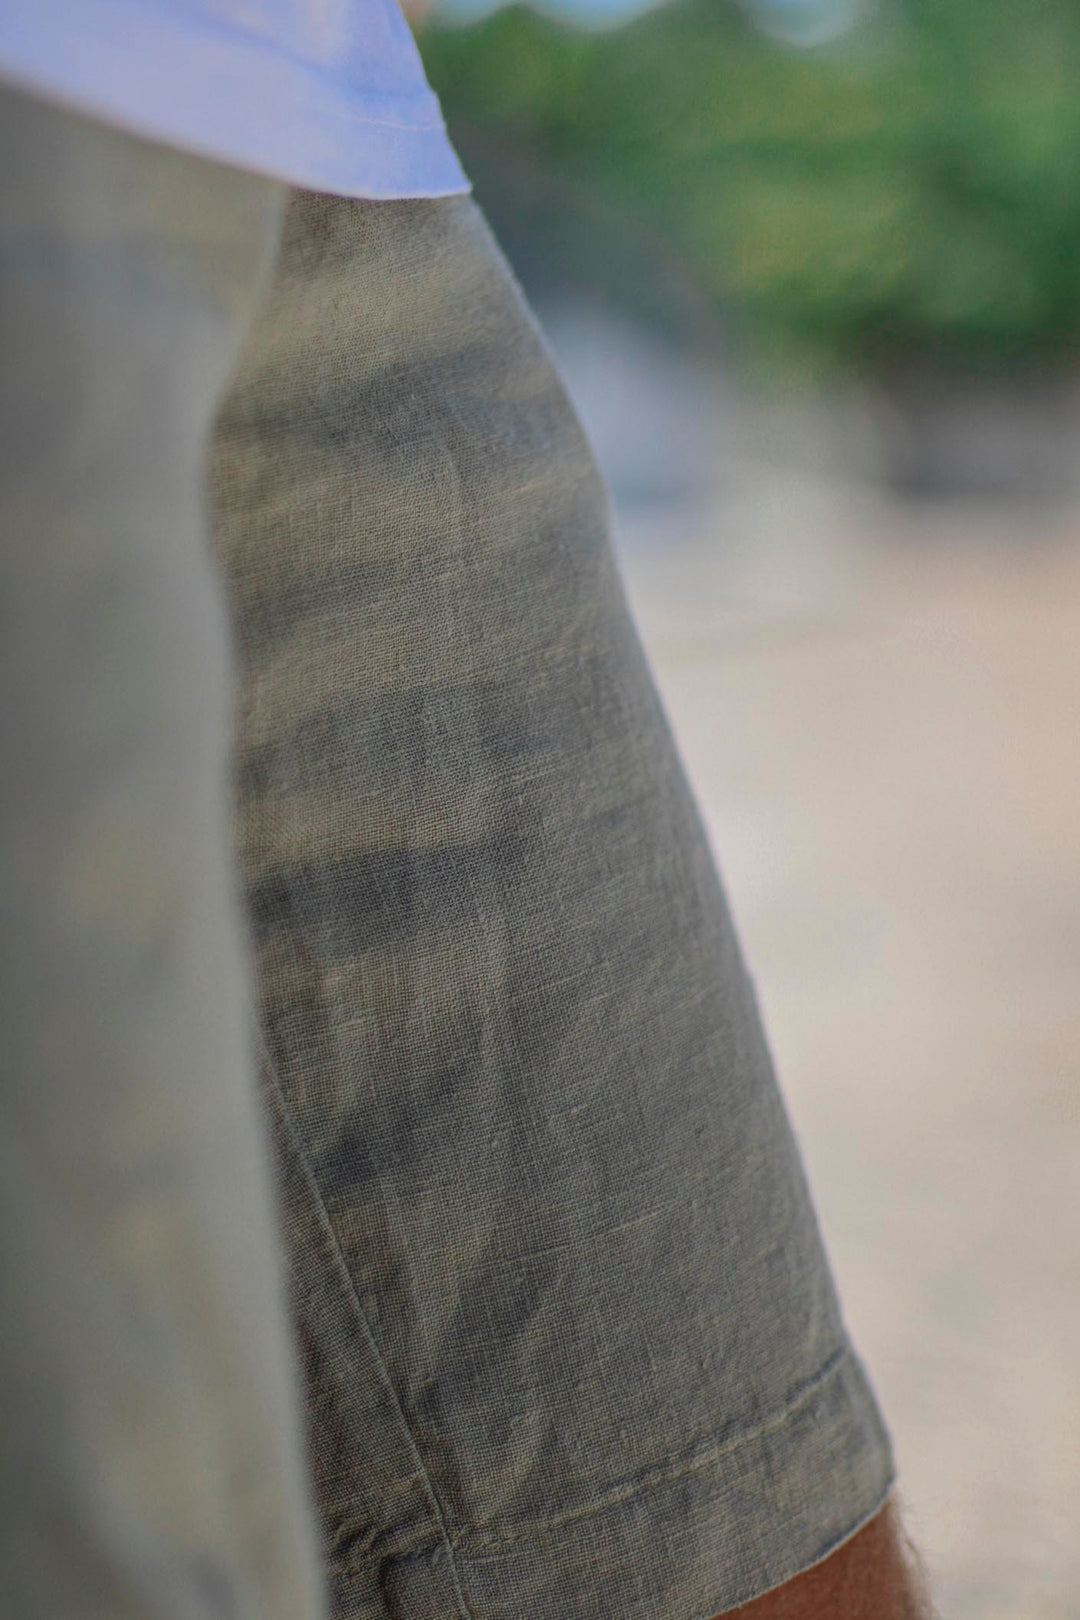 Bermuda 100% Grayish Khaki Linen